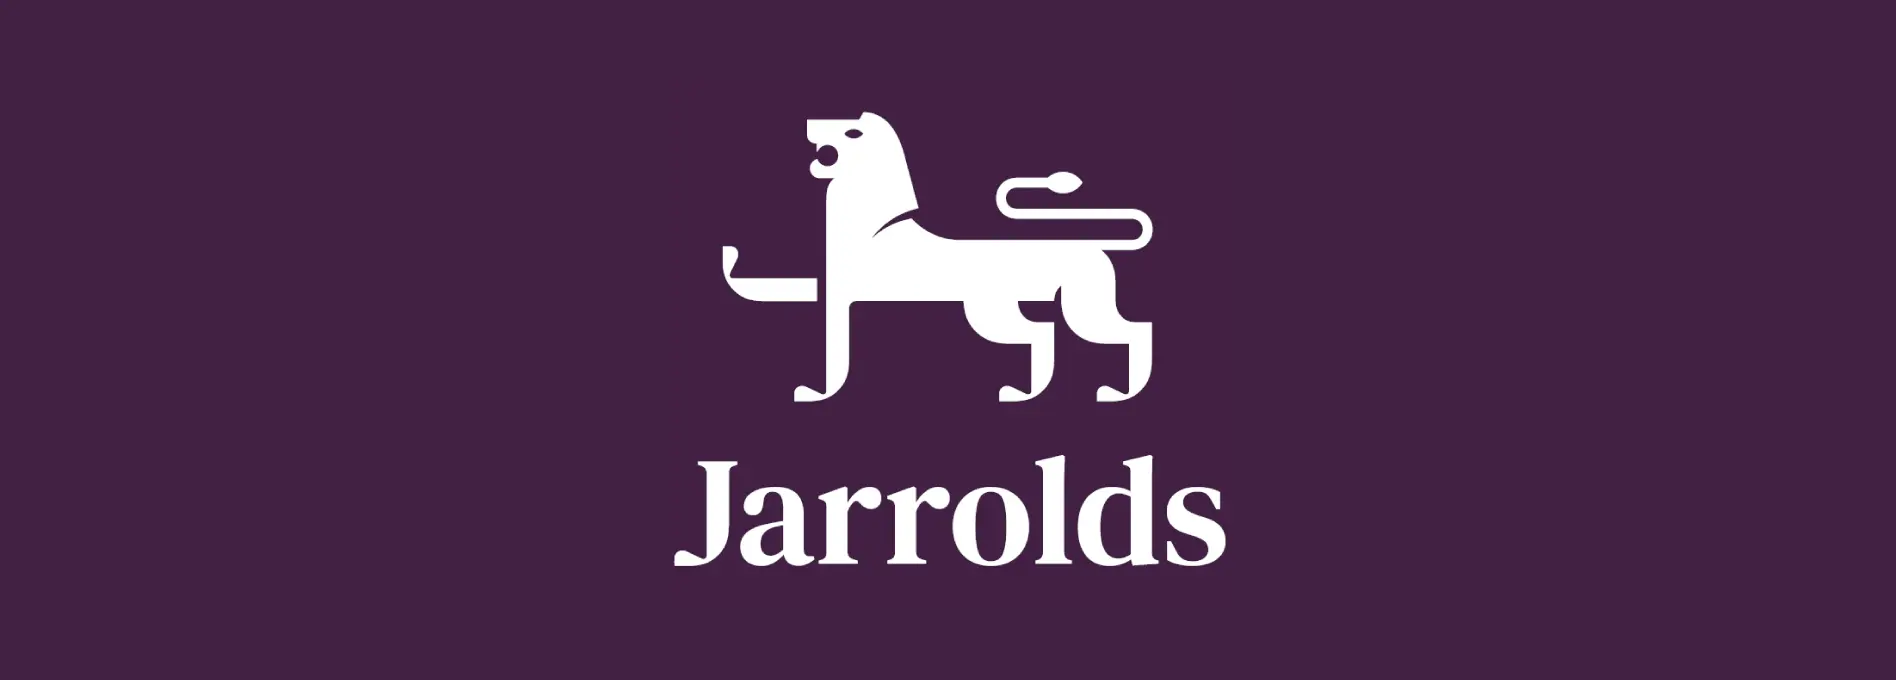 Jarroldsによるリブランディング事例分析2023